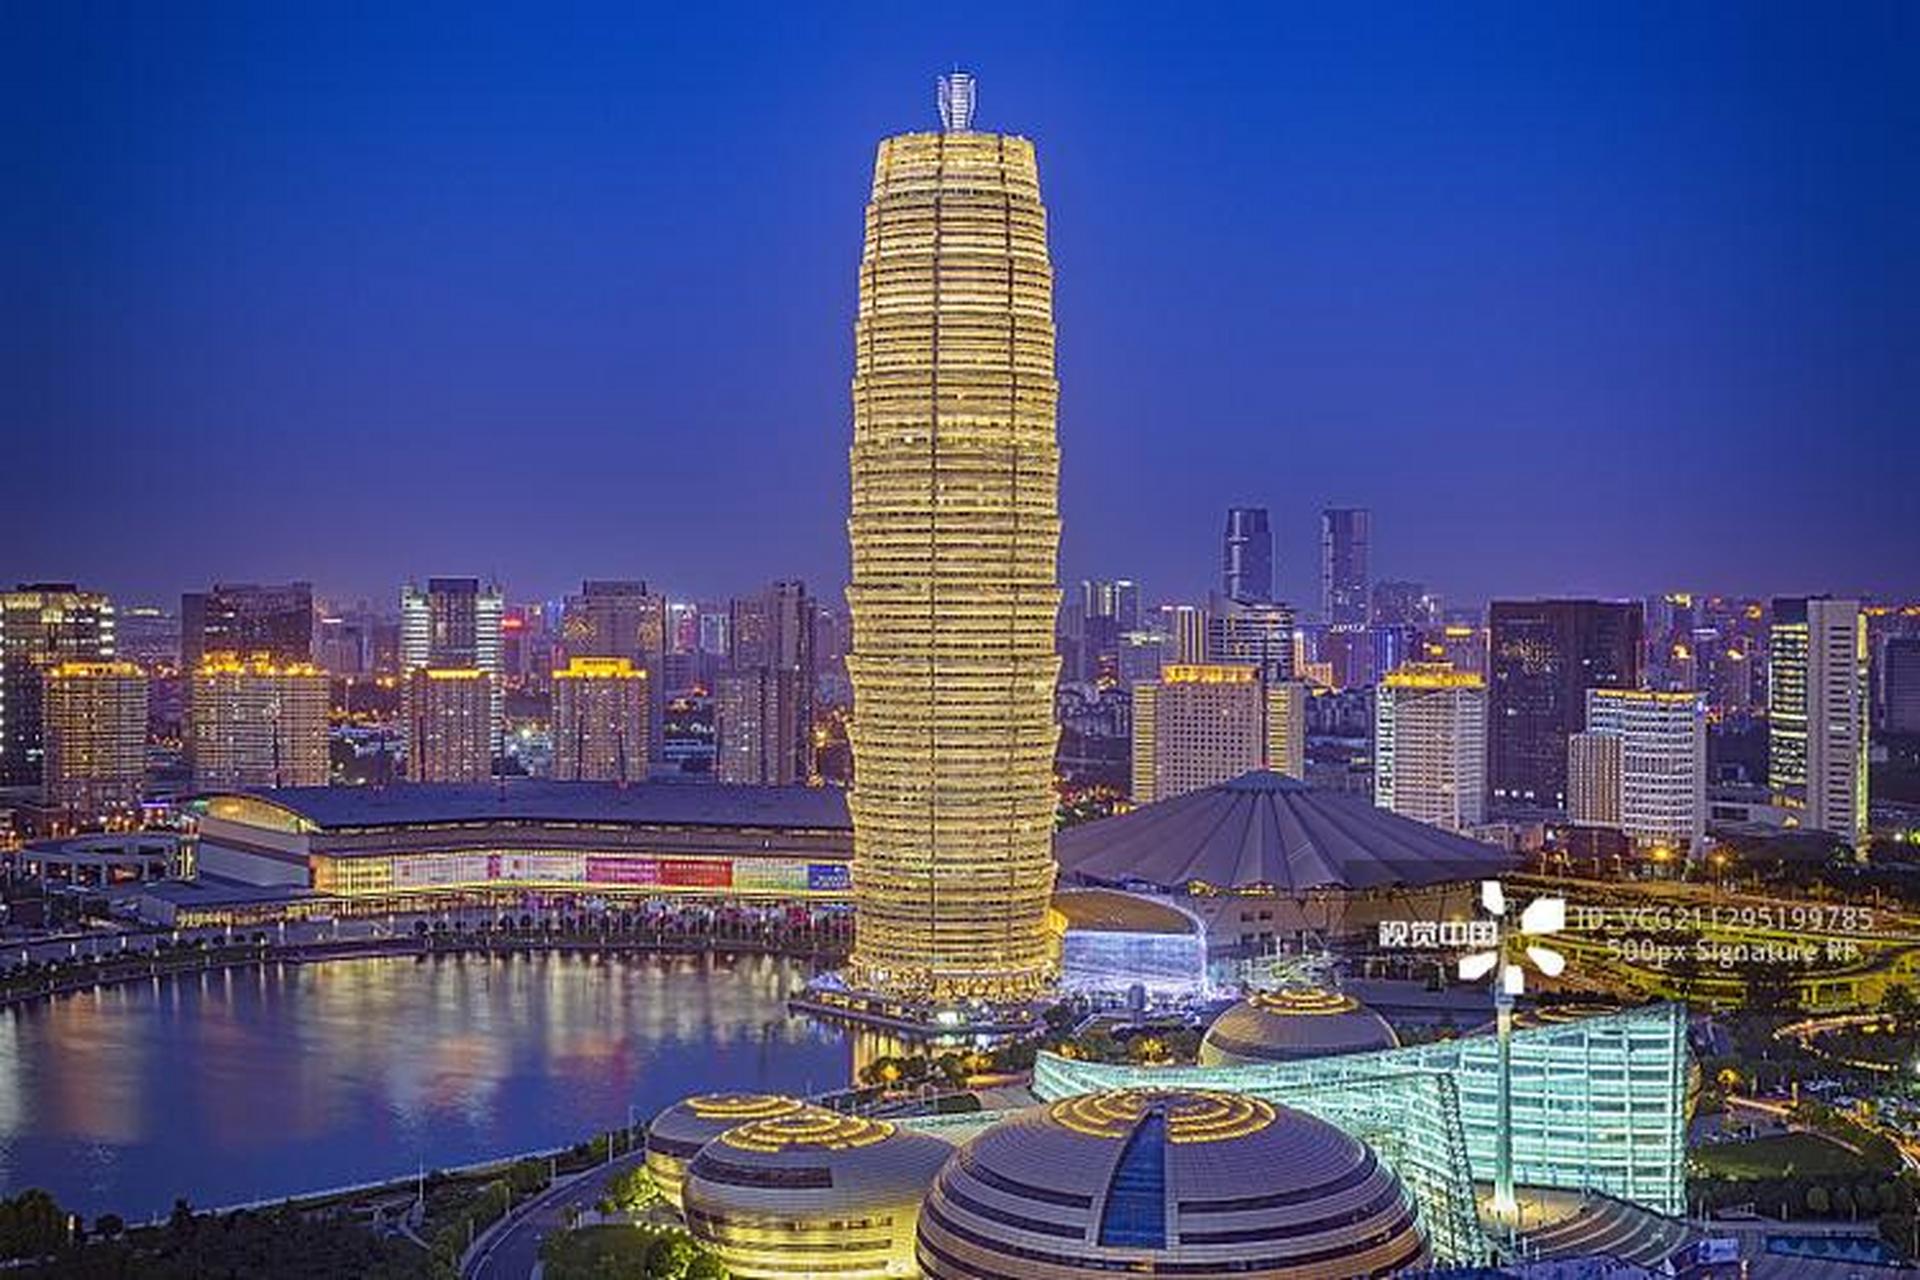 郑州的中央商务区是摩天大楼的集中之地,夜晚时分,这些高楼大厦点亮了